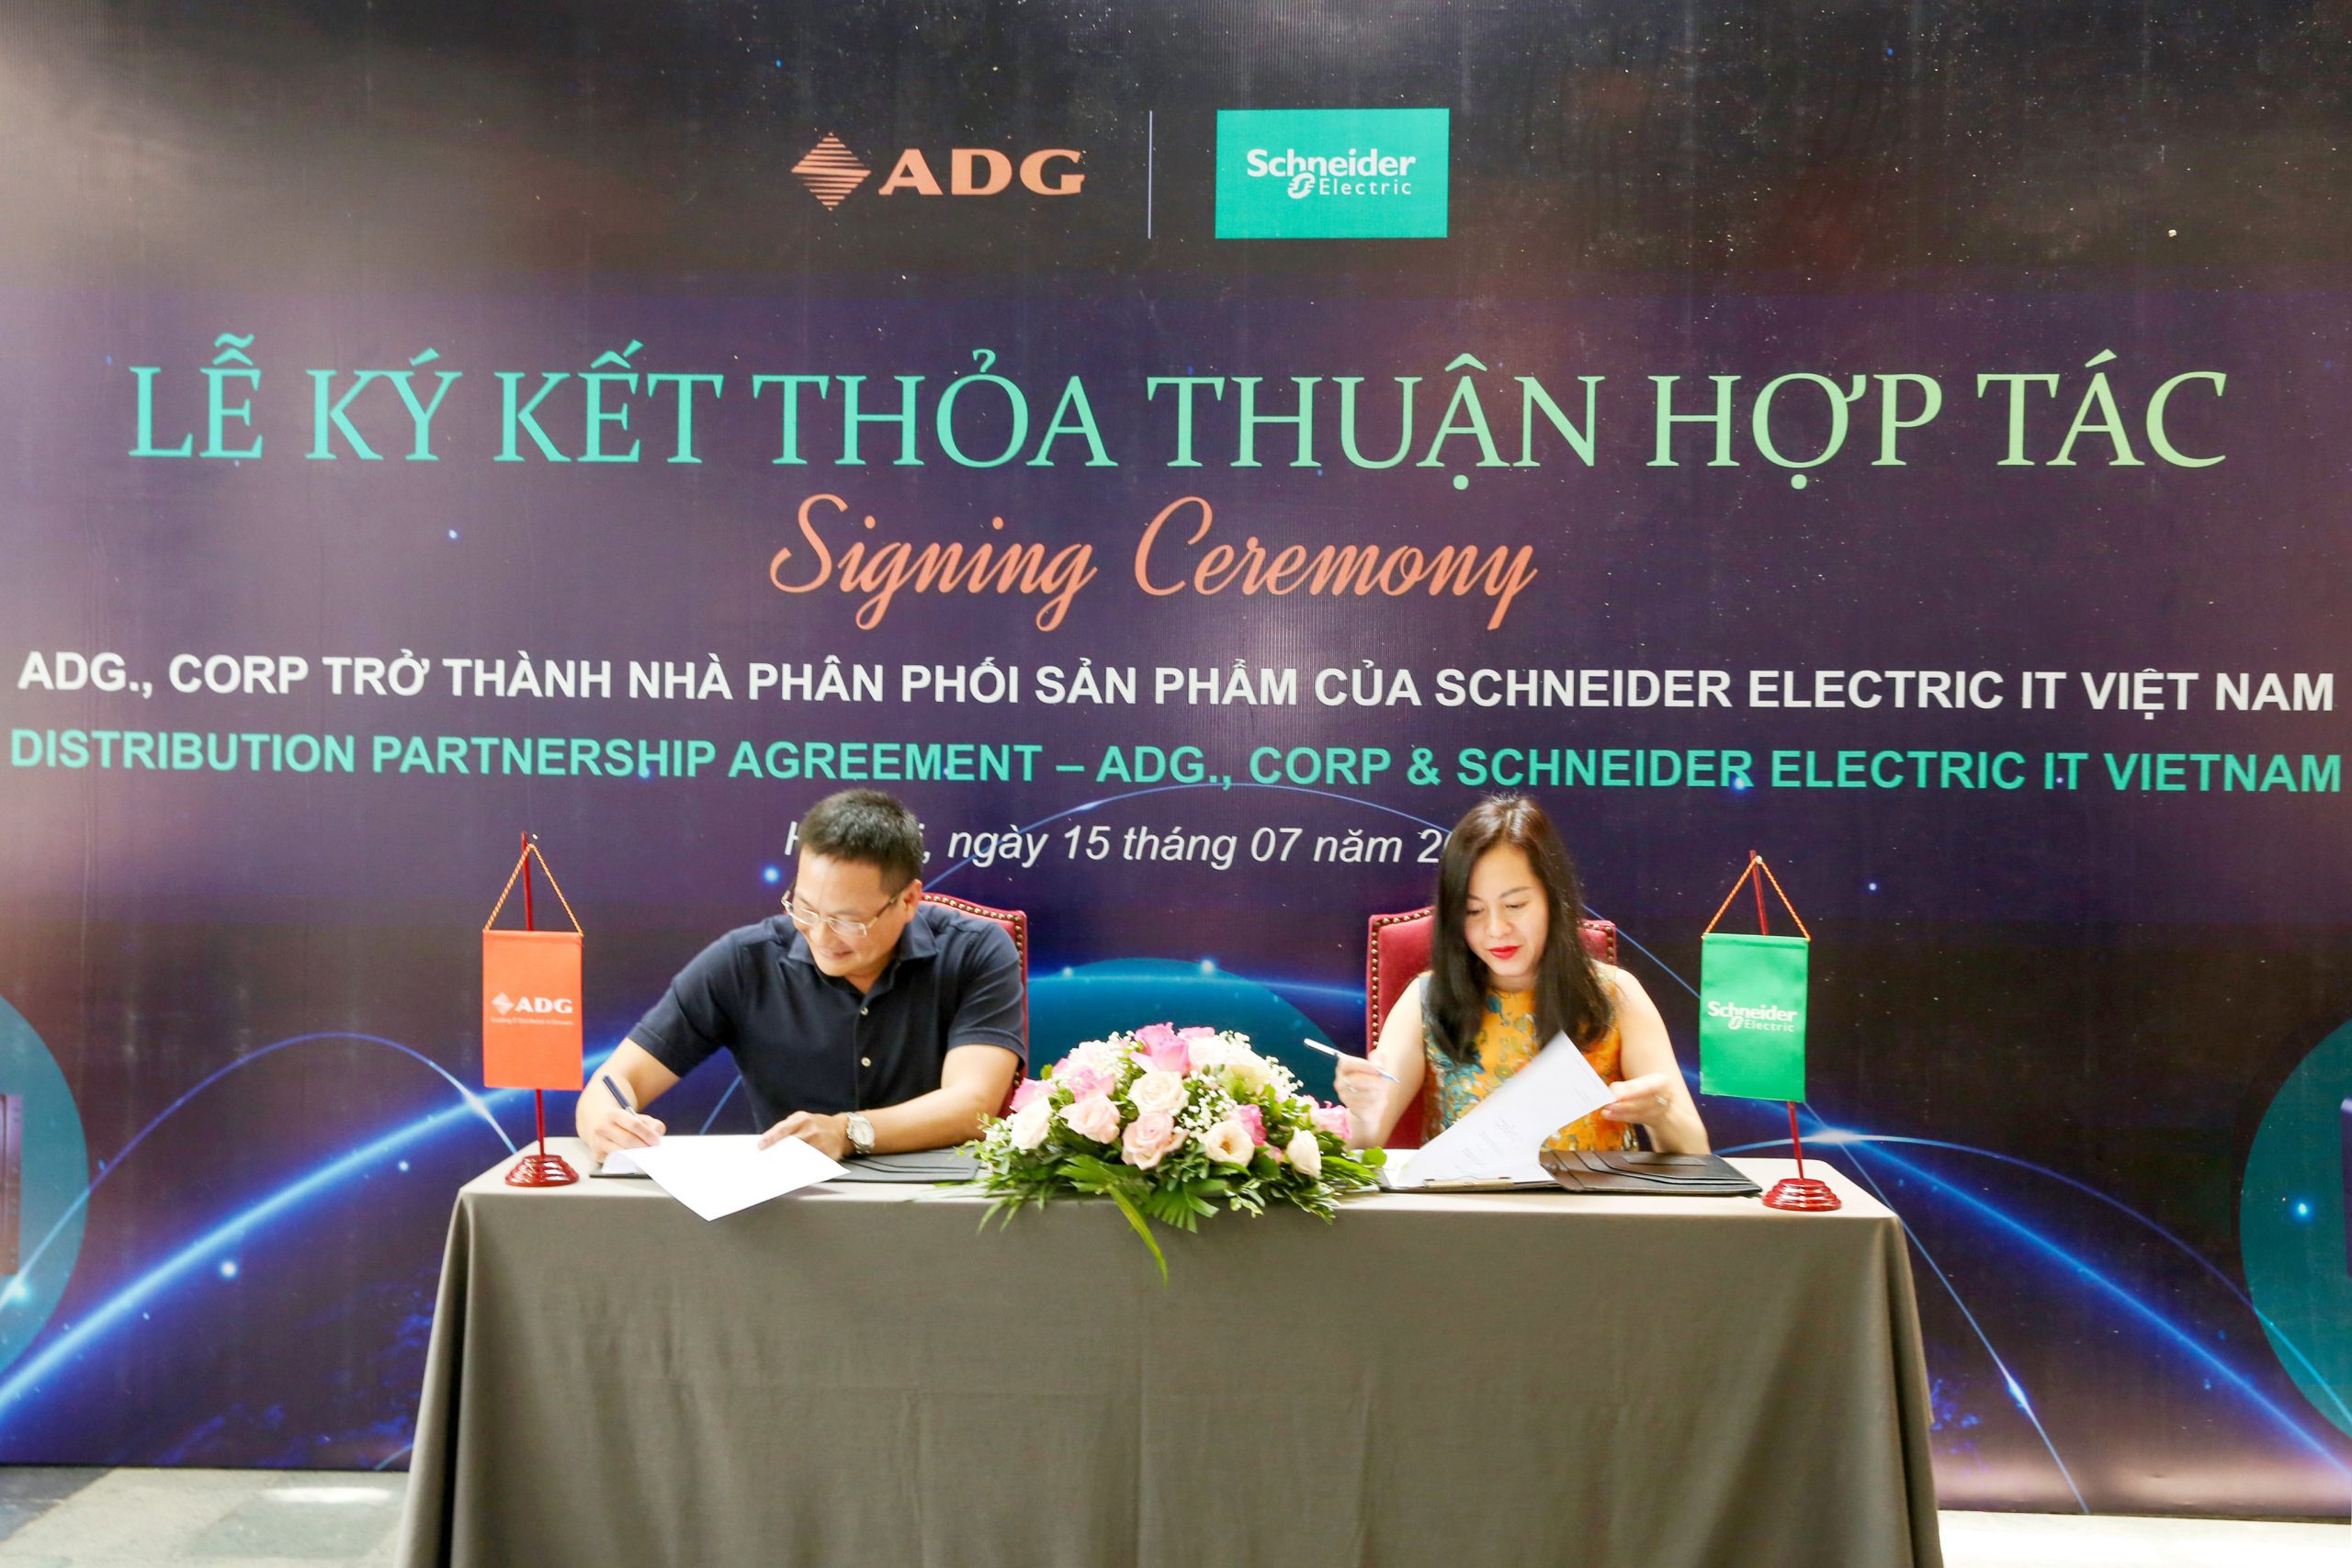 ADG chính thức trở thành Nhà phân phối của APC- Schneider Electric IT Việt Nam.